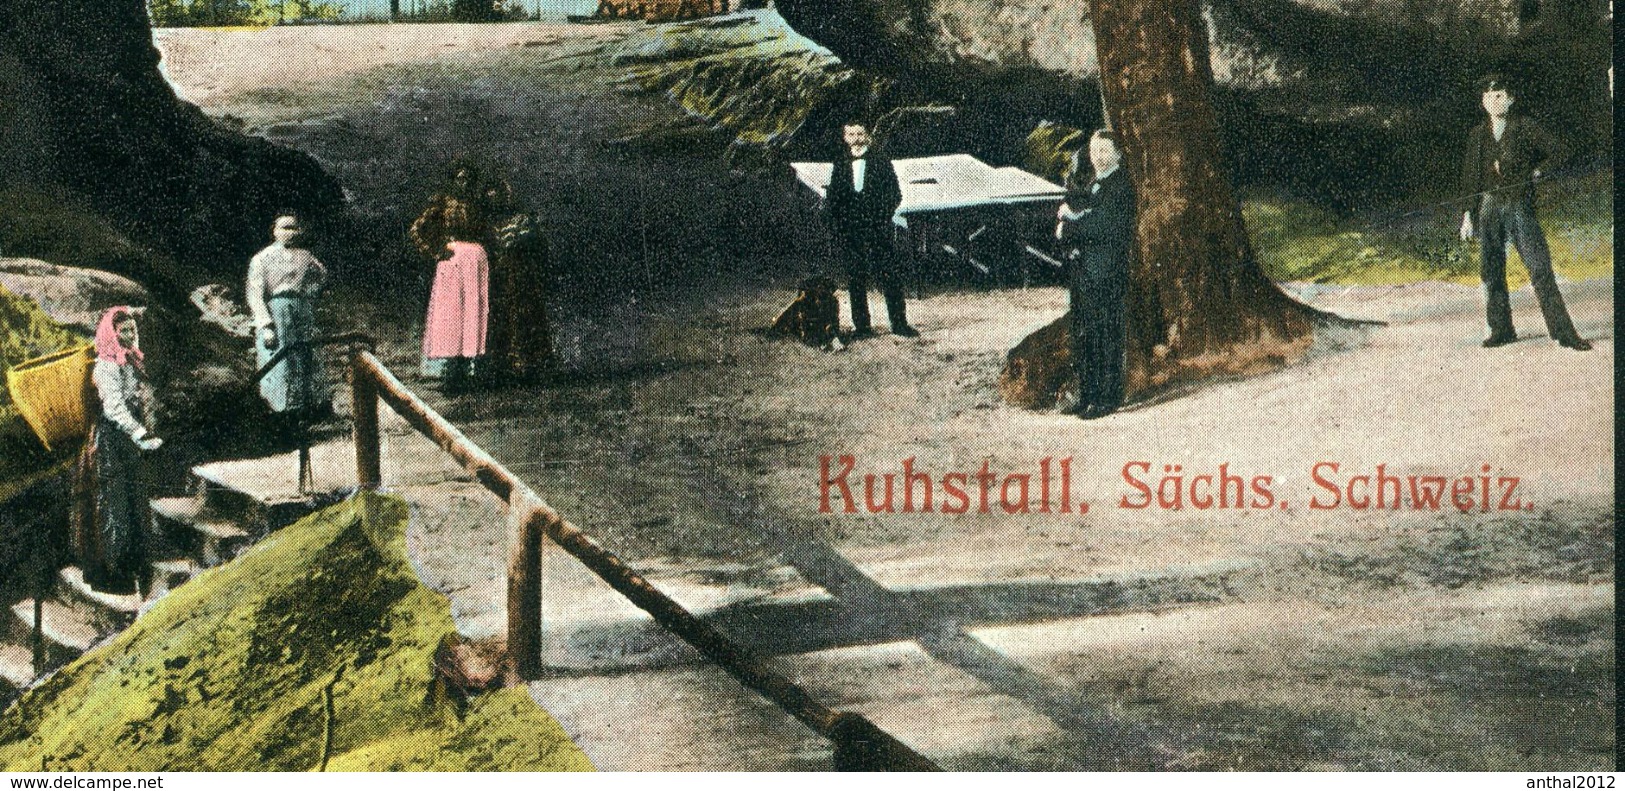 Rarität Litho AK Sächsische Schweiz Kuhstall Mit Leuten Kirnitzschtal Lichtenhain Bad Schandau 6.5.1908 - Kirnitzschtal